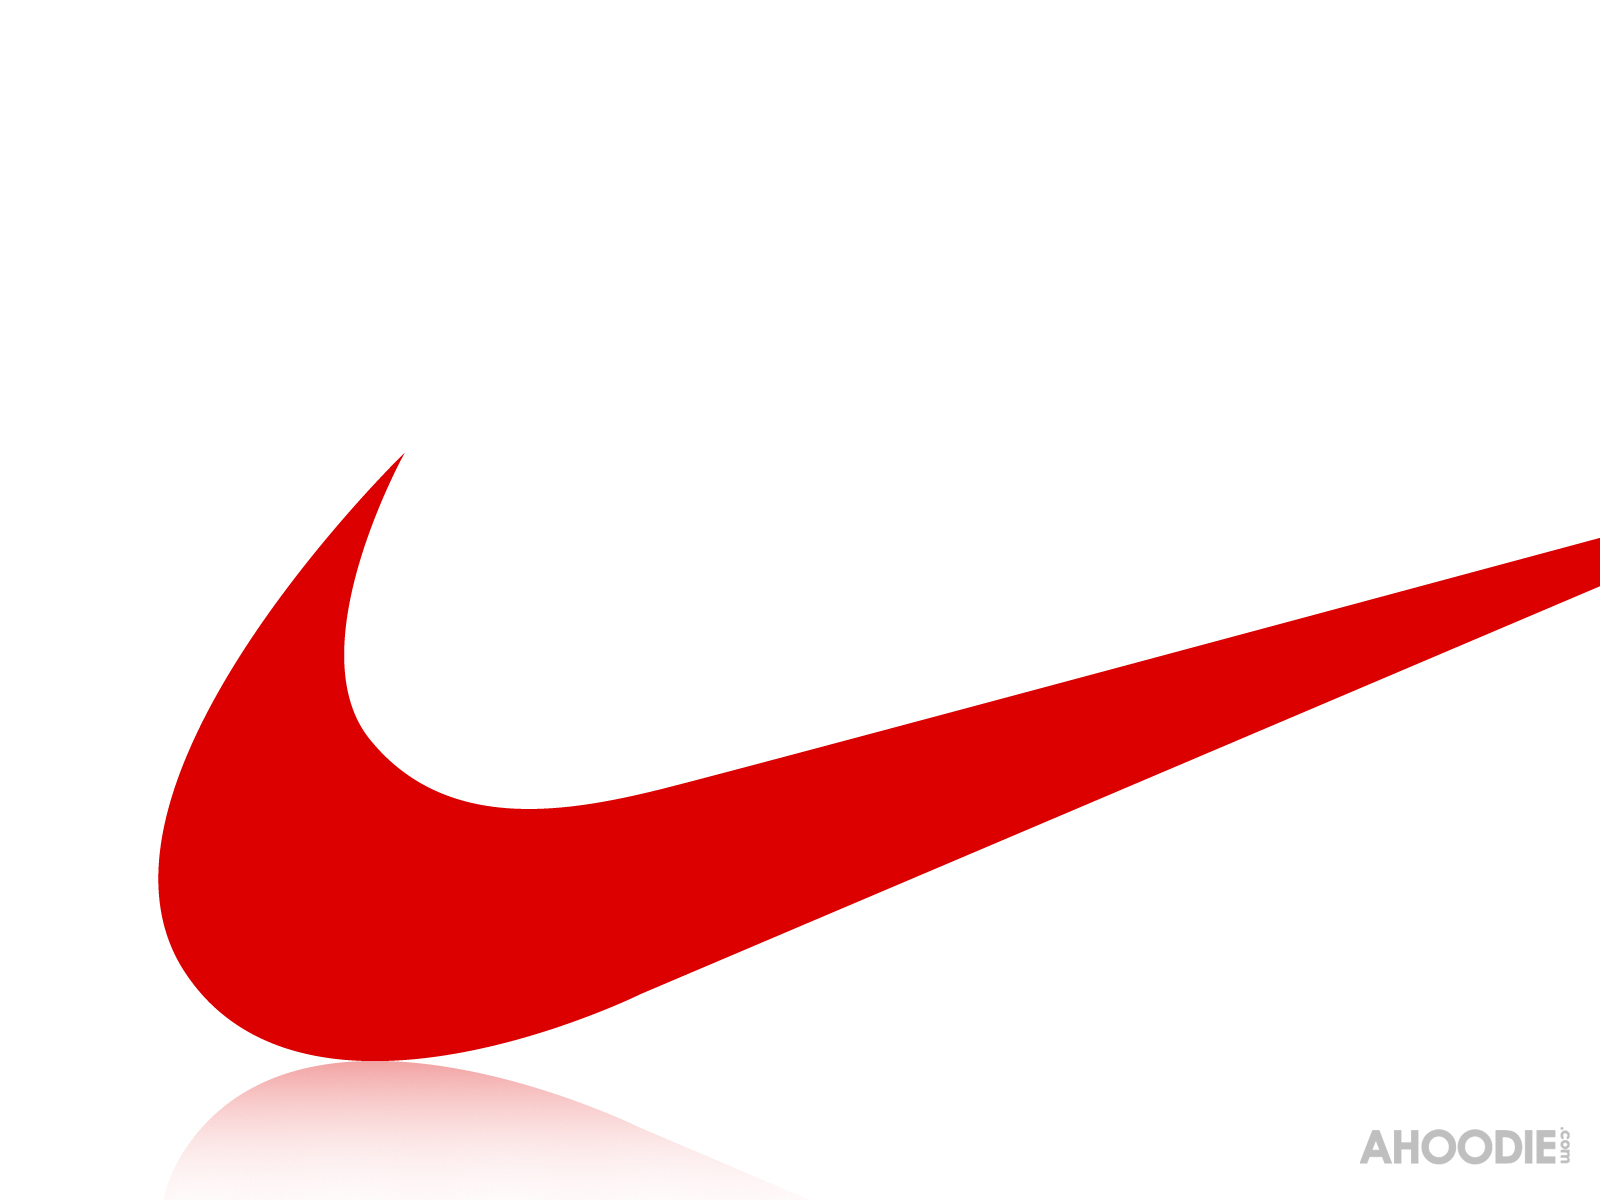 [73+] Nike Swoosh Wallpapers | WallpaperSafari